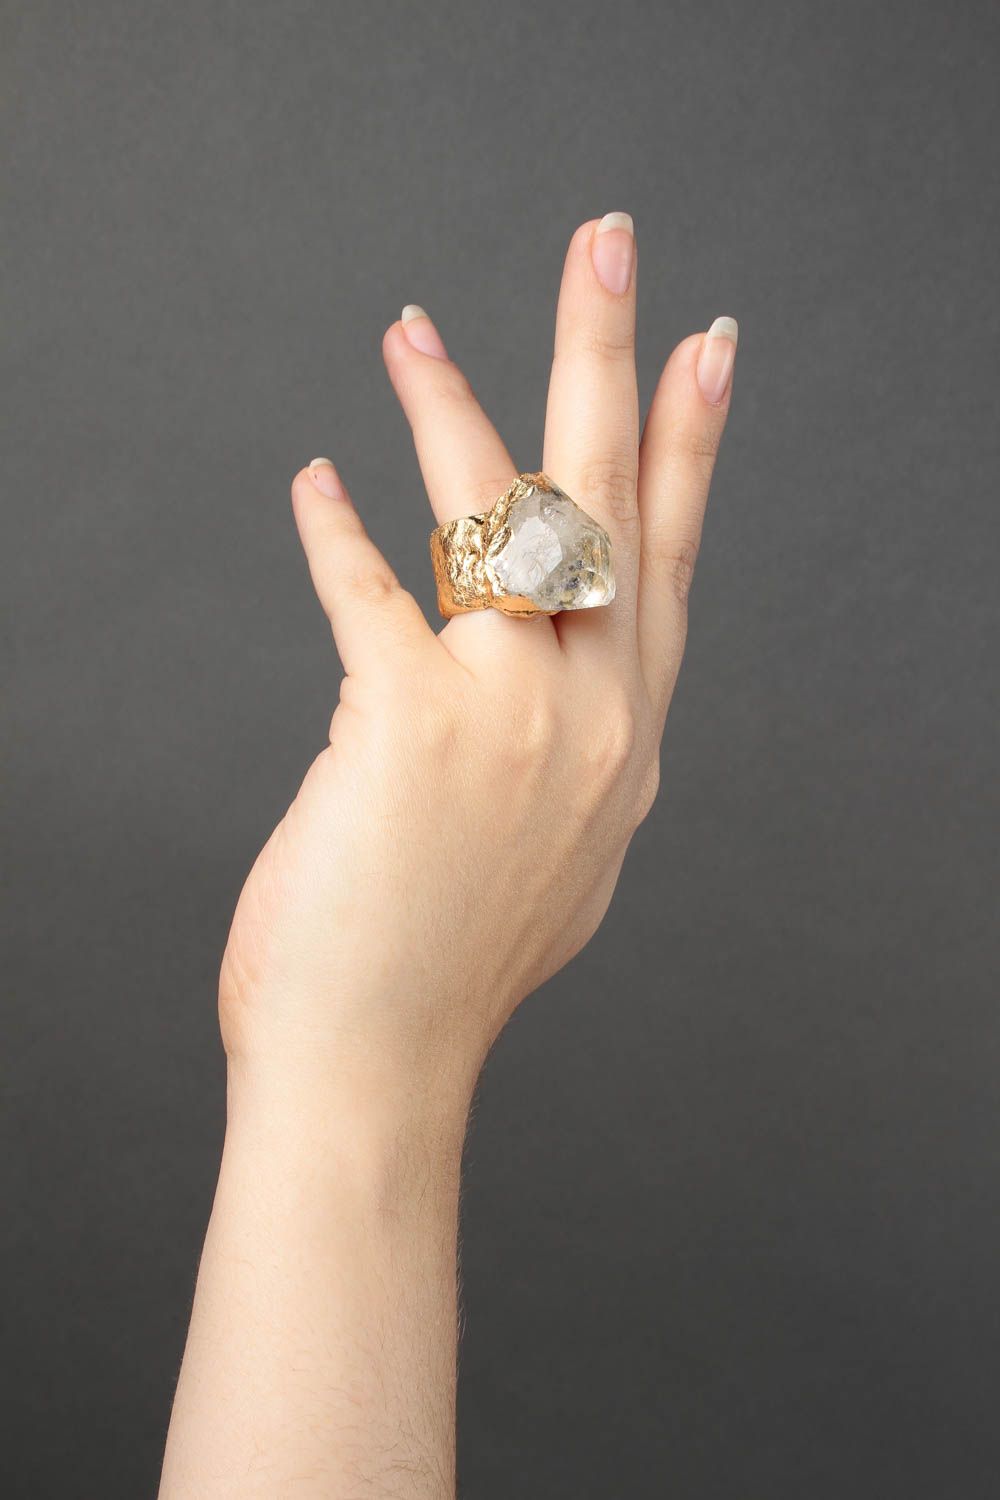 Кольцо ручной работы украшение из полимерной глины украшение кольцо с хрусталем фото 1